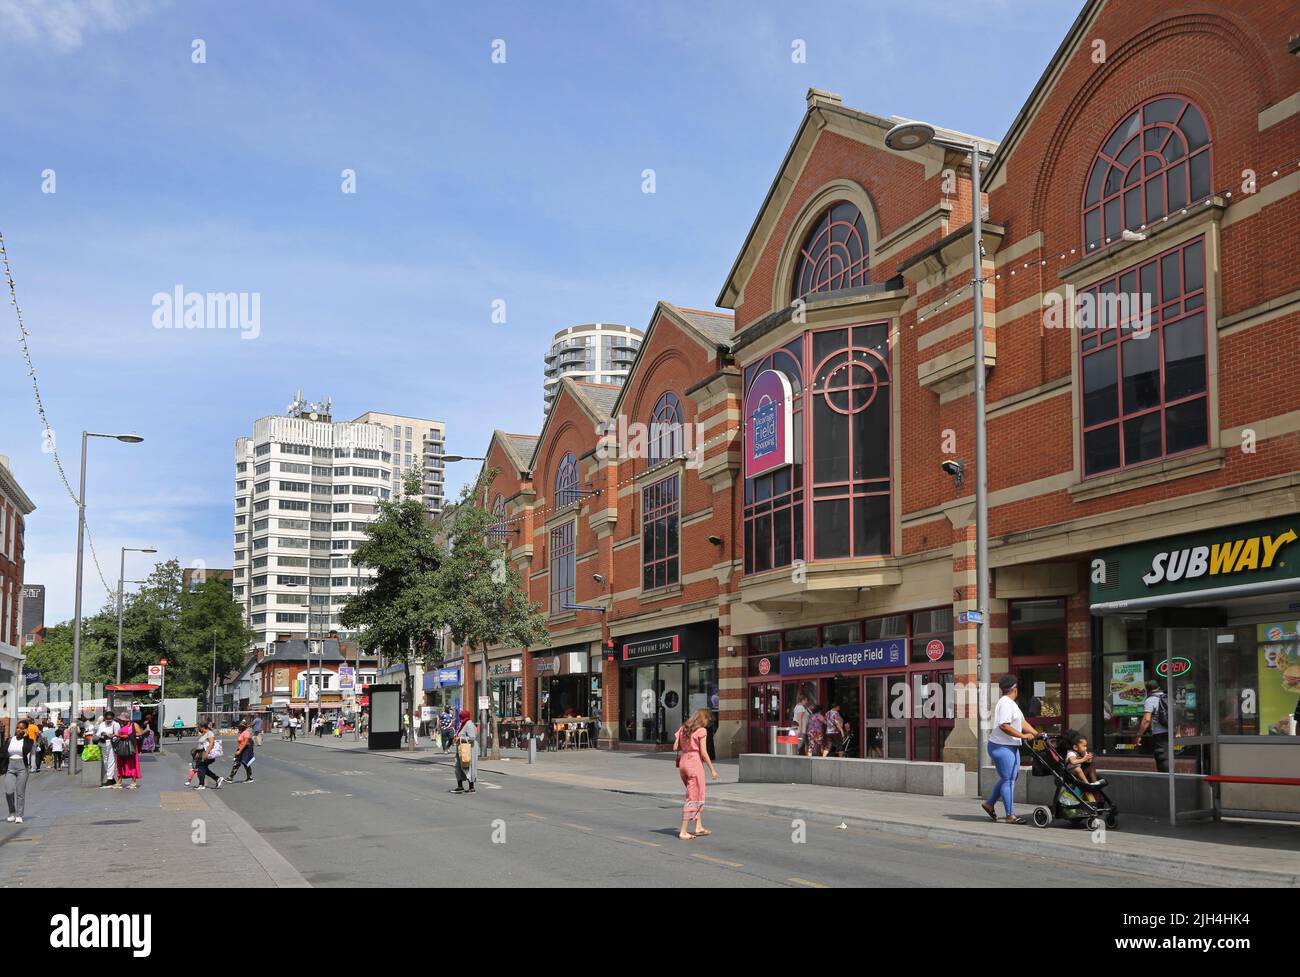 Barking Town Center, Londra, Regno Unito. Ripple Road, mostra il centro commerciale Vicarage Field (a destra). Ambiente di strada trafficato. Giorno d'estate. Foto Stock